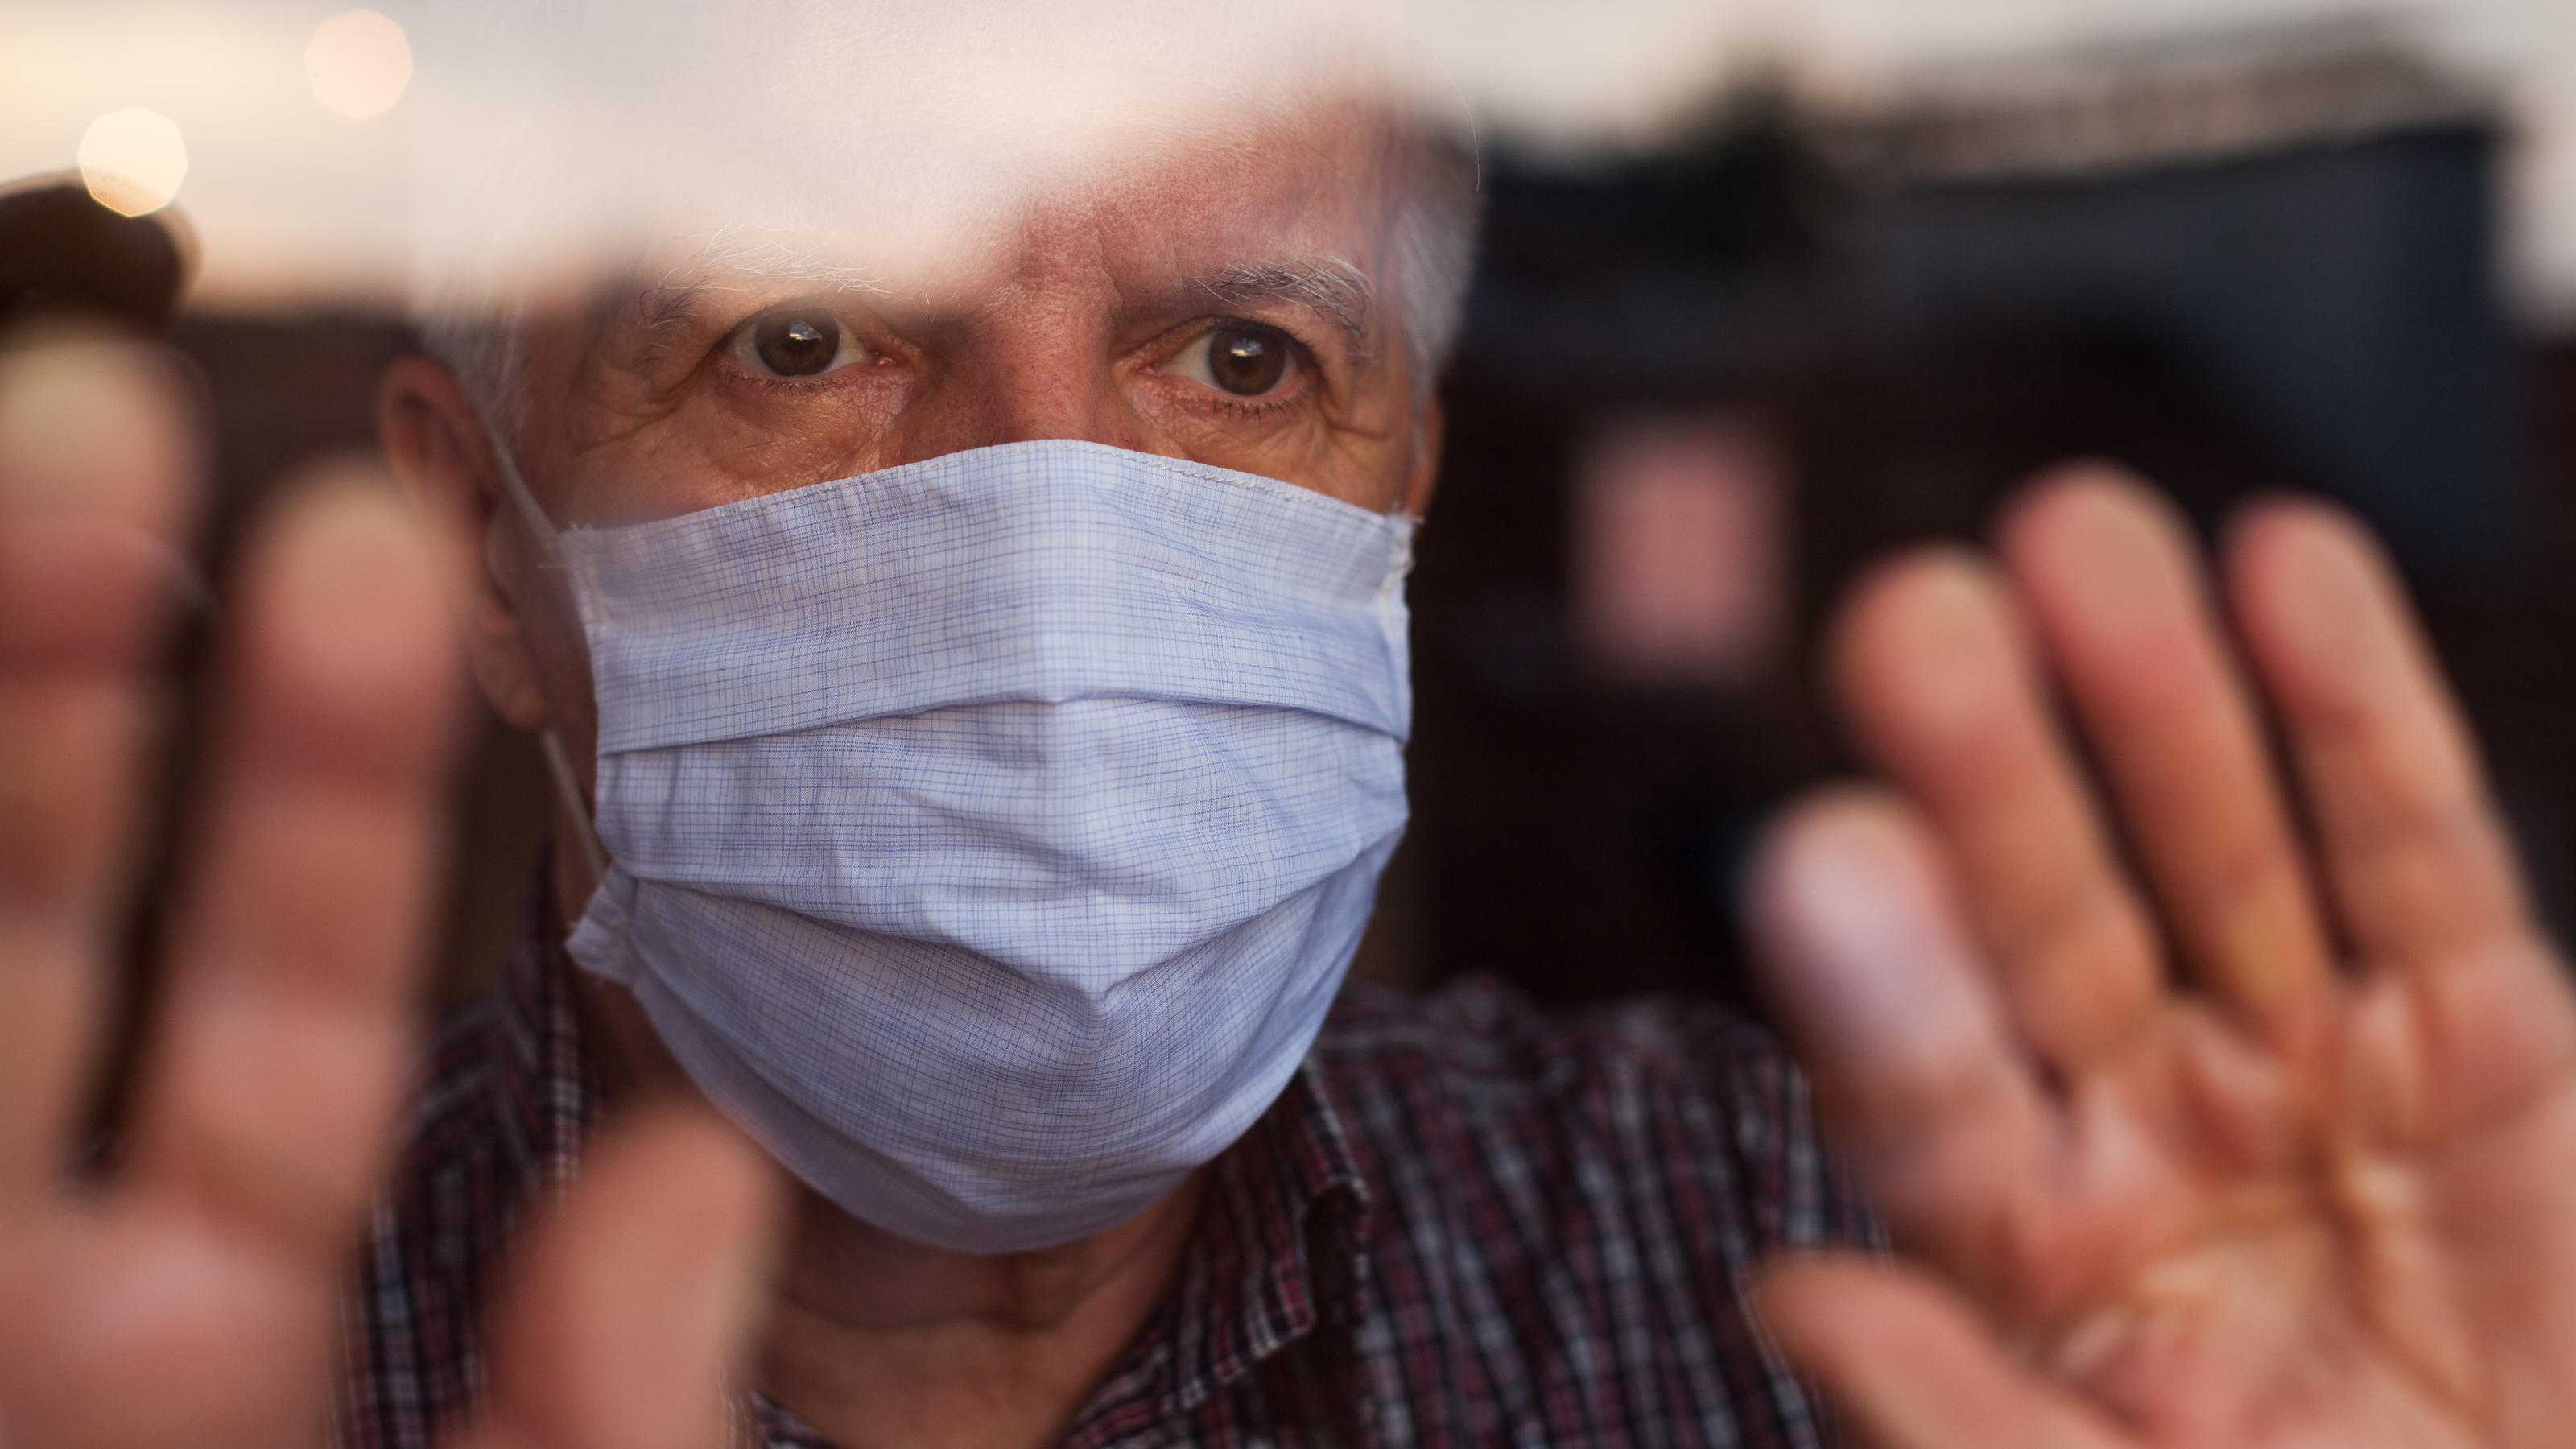 Ein älterer Mann trägt Mund-Nasenschutzmaske und scheint sich in Isolation zu befinden.